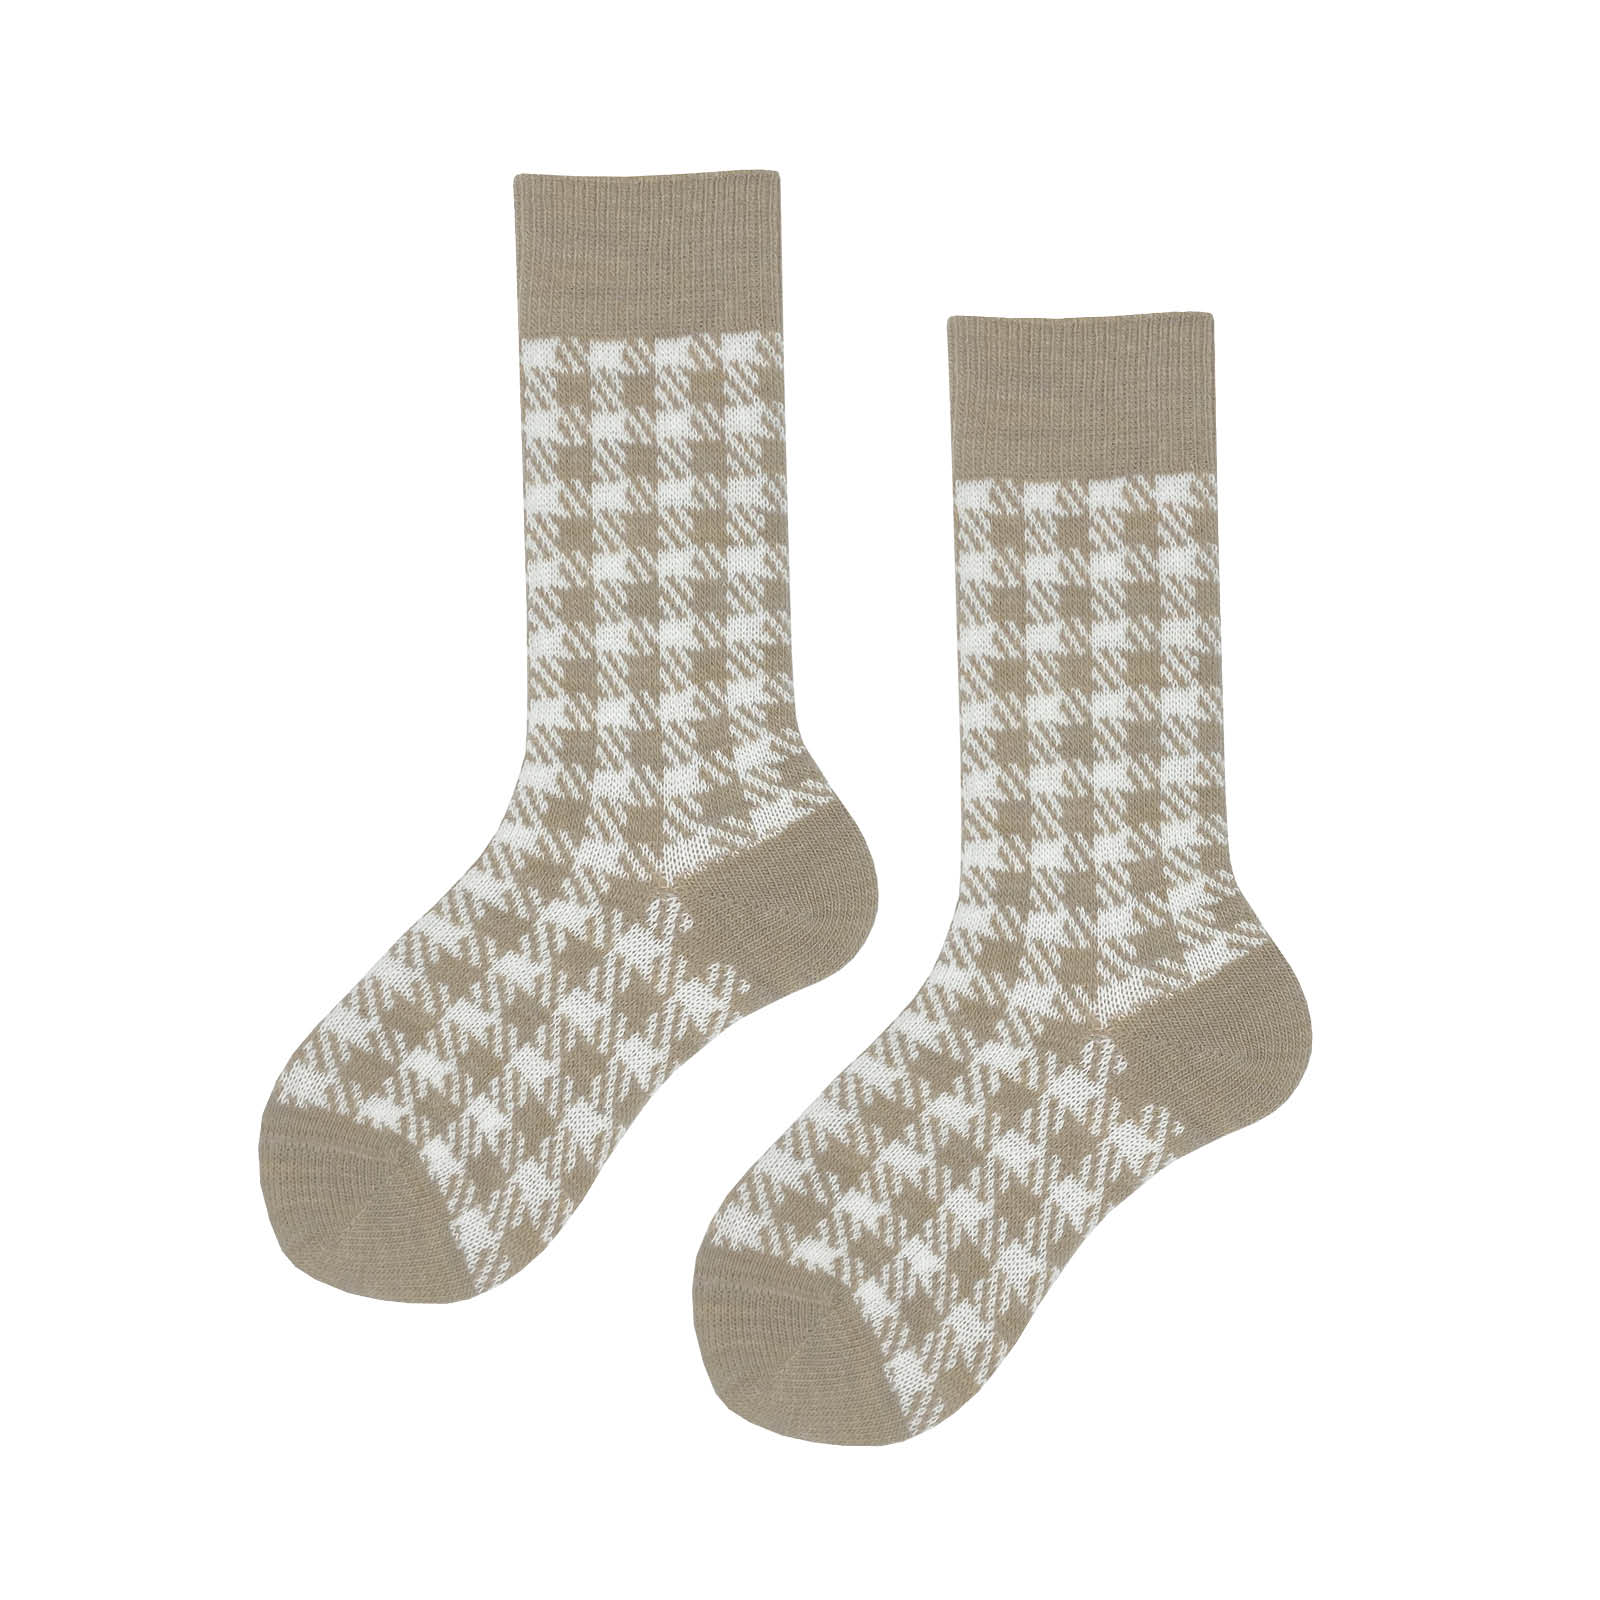 HUDSON Damen GLENCHECK -  35/38 - Socken mit klassischer Glencheck-Musterung - Torf-mel. (Braun)